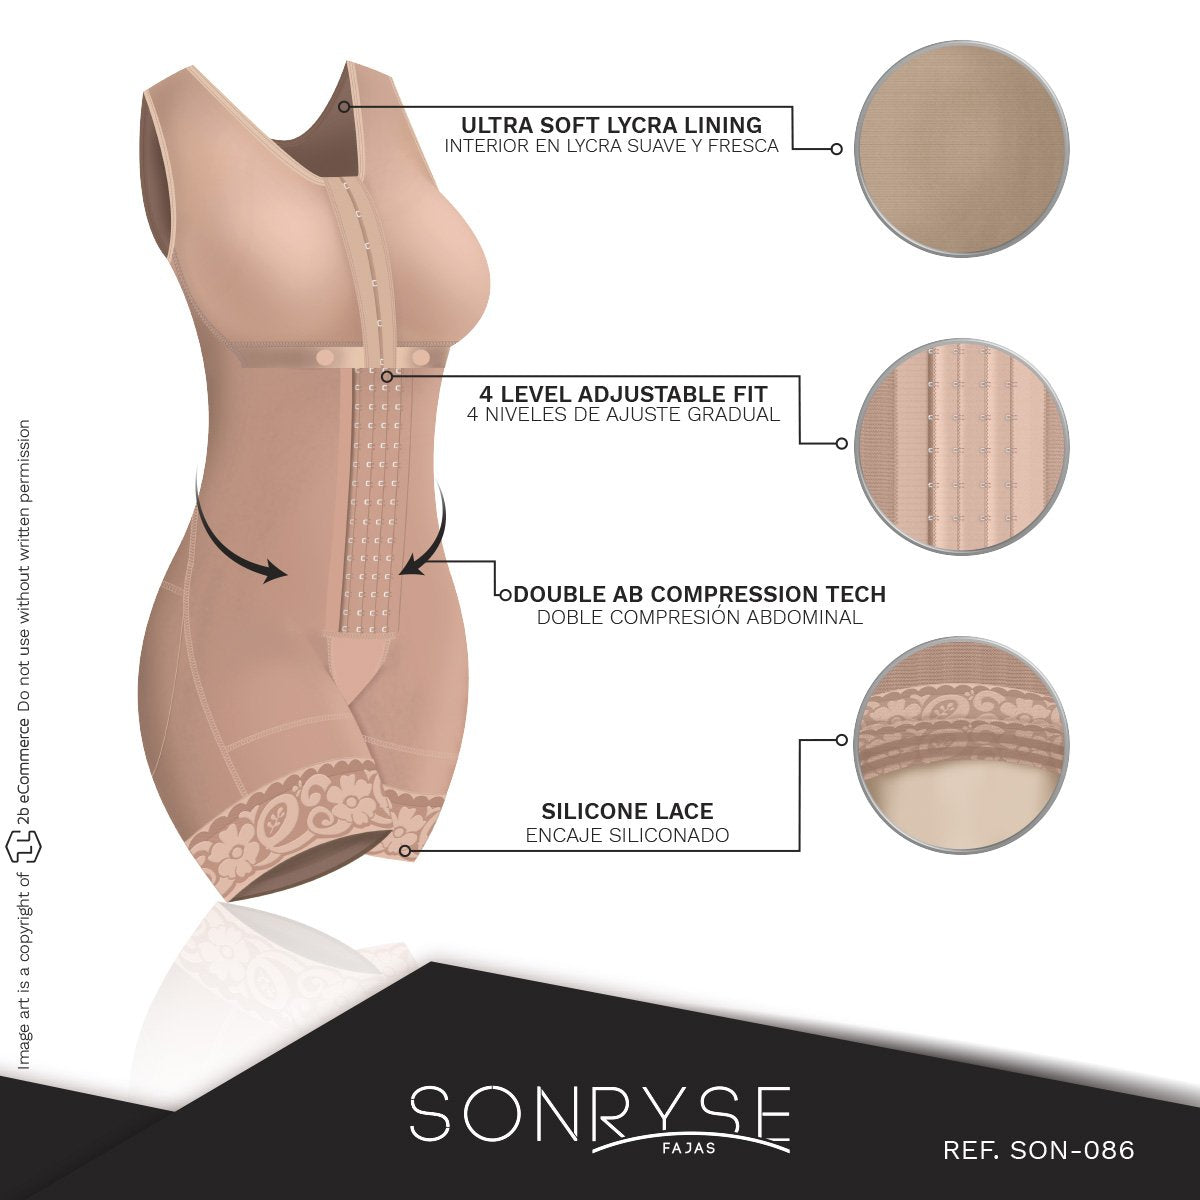 SONRYSE 086BF Tummy Control Shapewear for Women /Daily Use